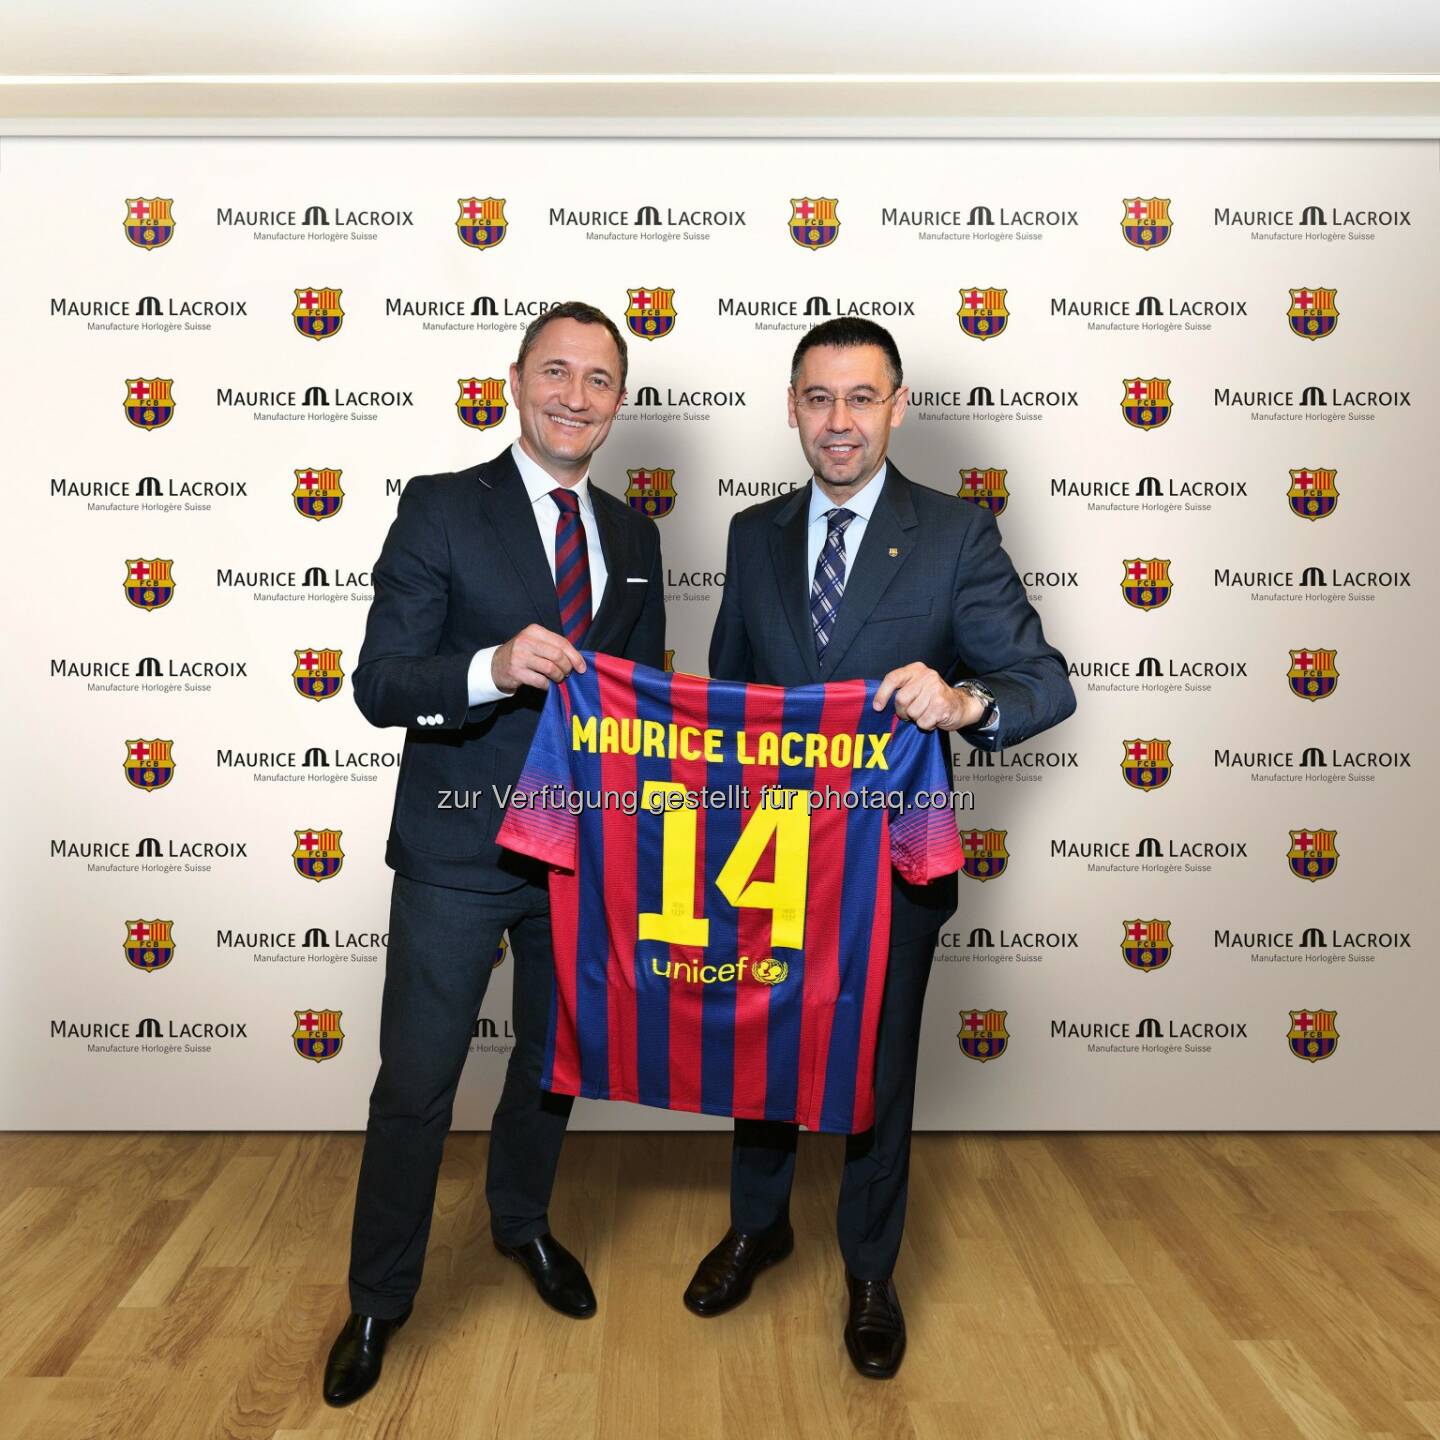 Die Schweizer Uhrenmanufaktur Maurice Lacroix und der Fussballclub FC Barcelona kündigen eine dreijährige Partnerschaft an.